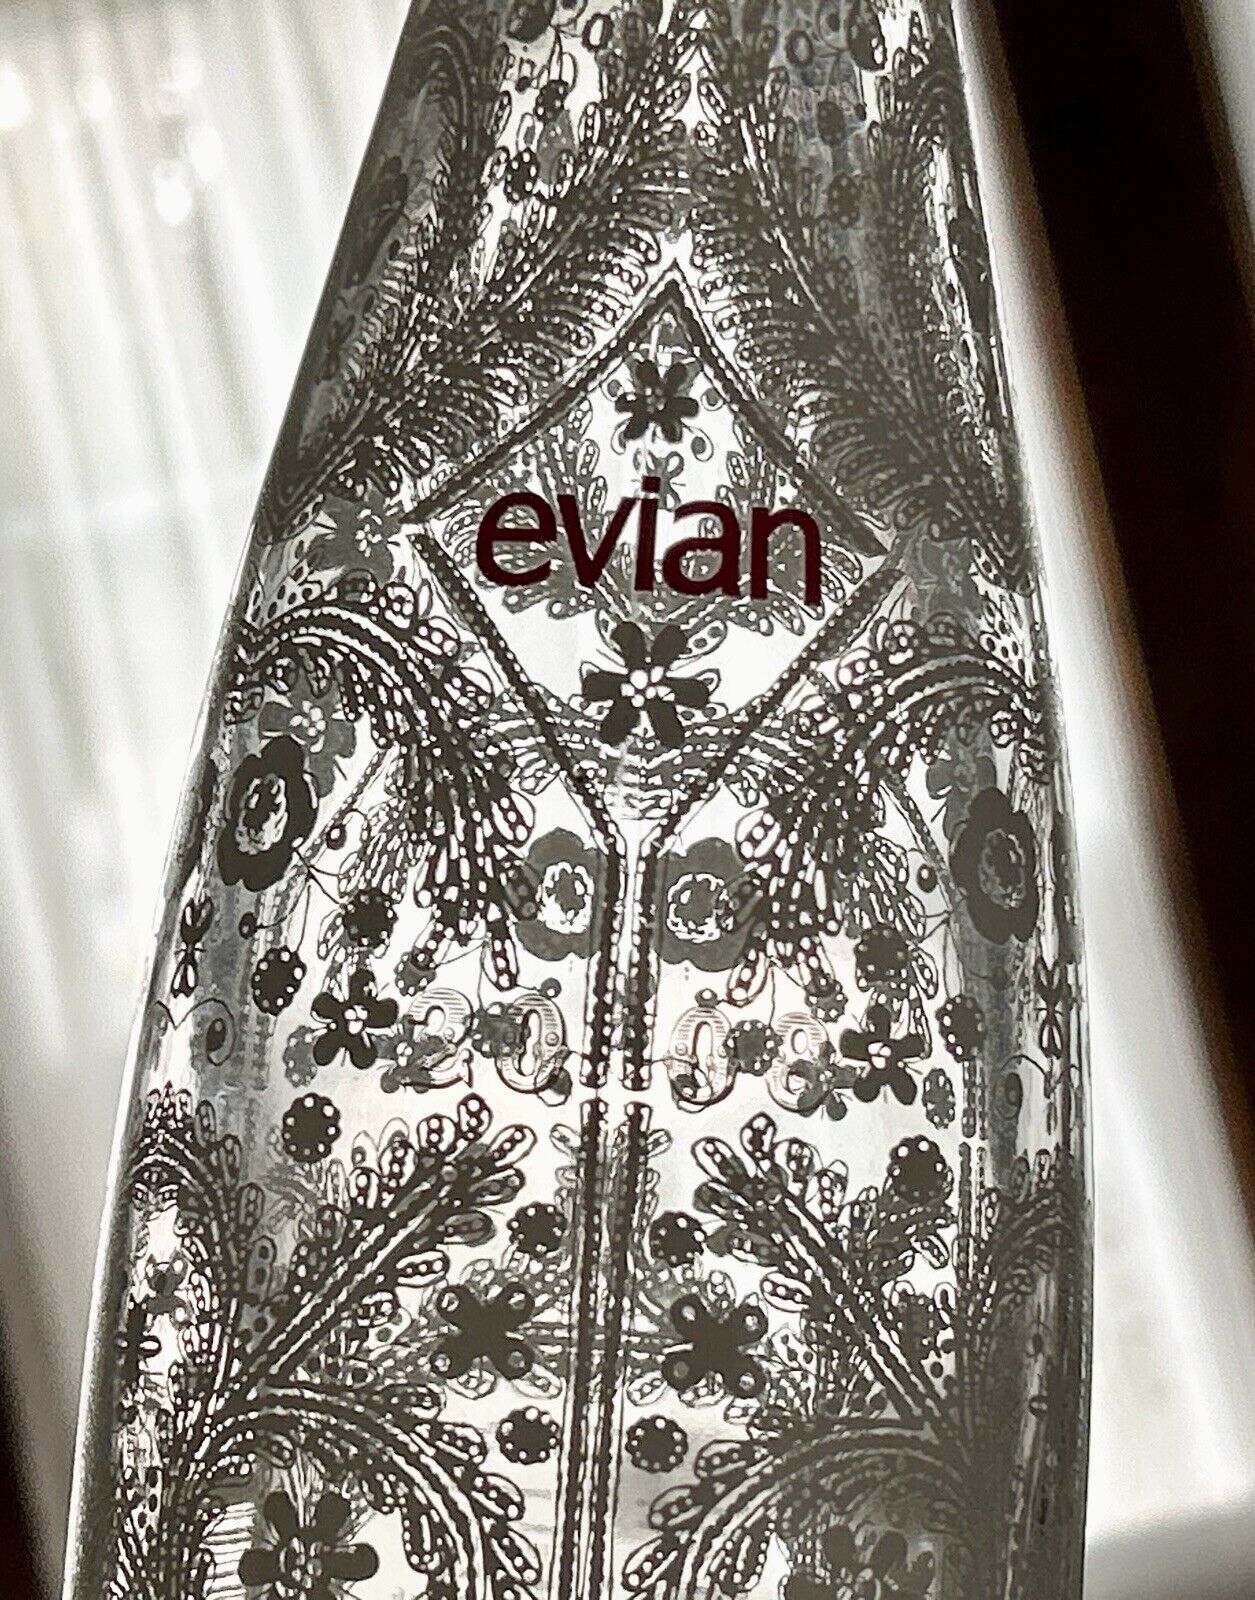 Evian Limited Edition 2008 Christian Lacroix Glass Bottle Florals Empty 11.5”T